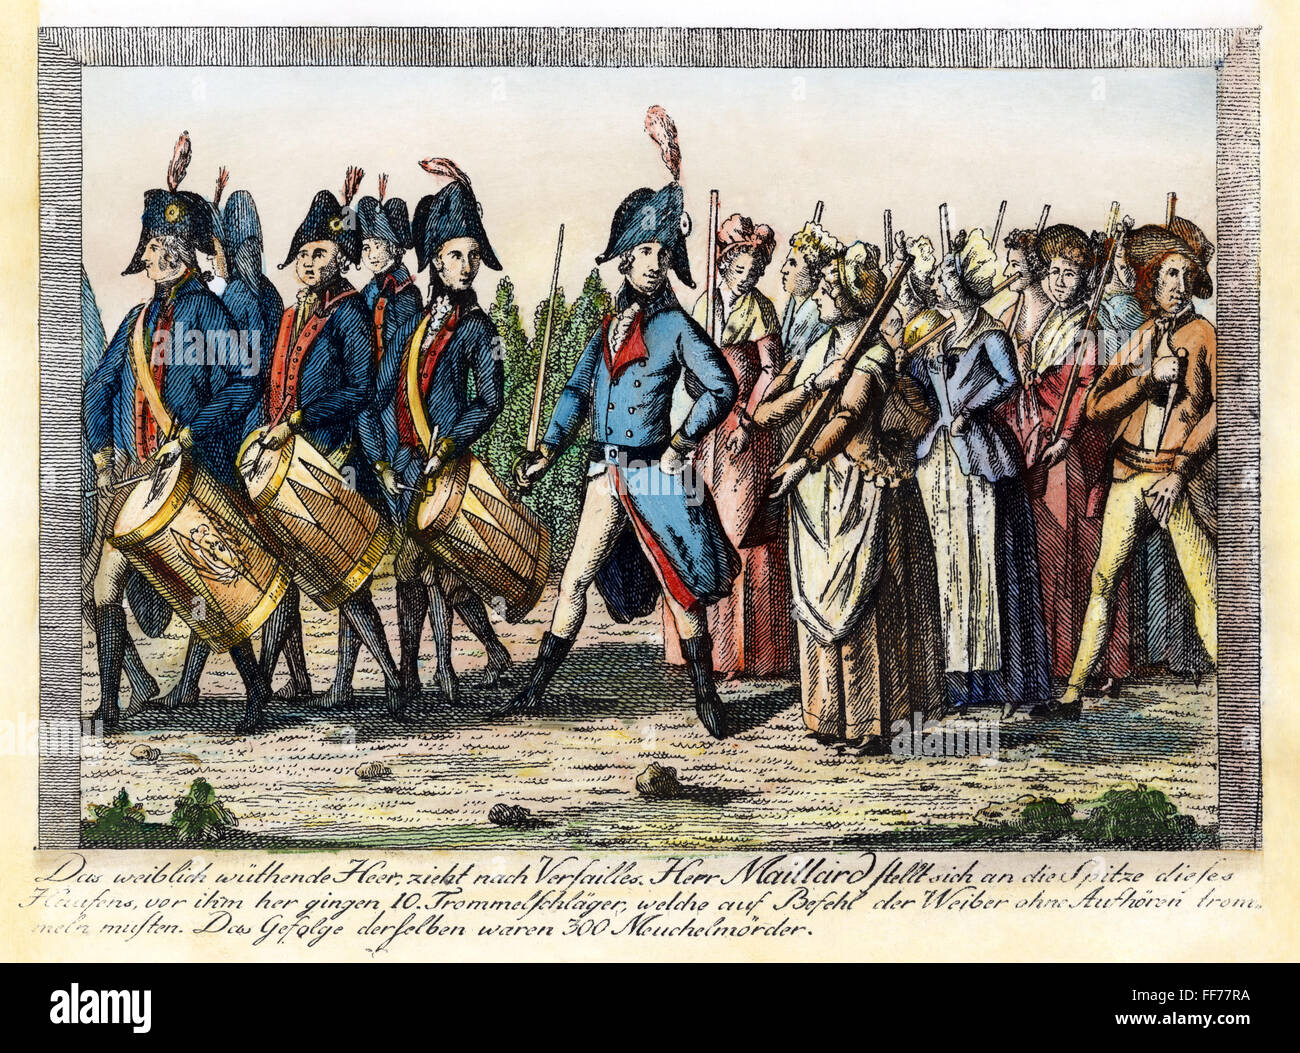 Révolution française, 1789. /Nla marche des femmes à Versailles le 5 octobre 1789. Gravure allemande contemporaine. Banque D'Images